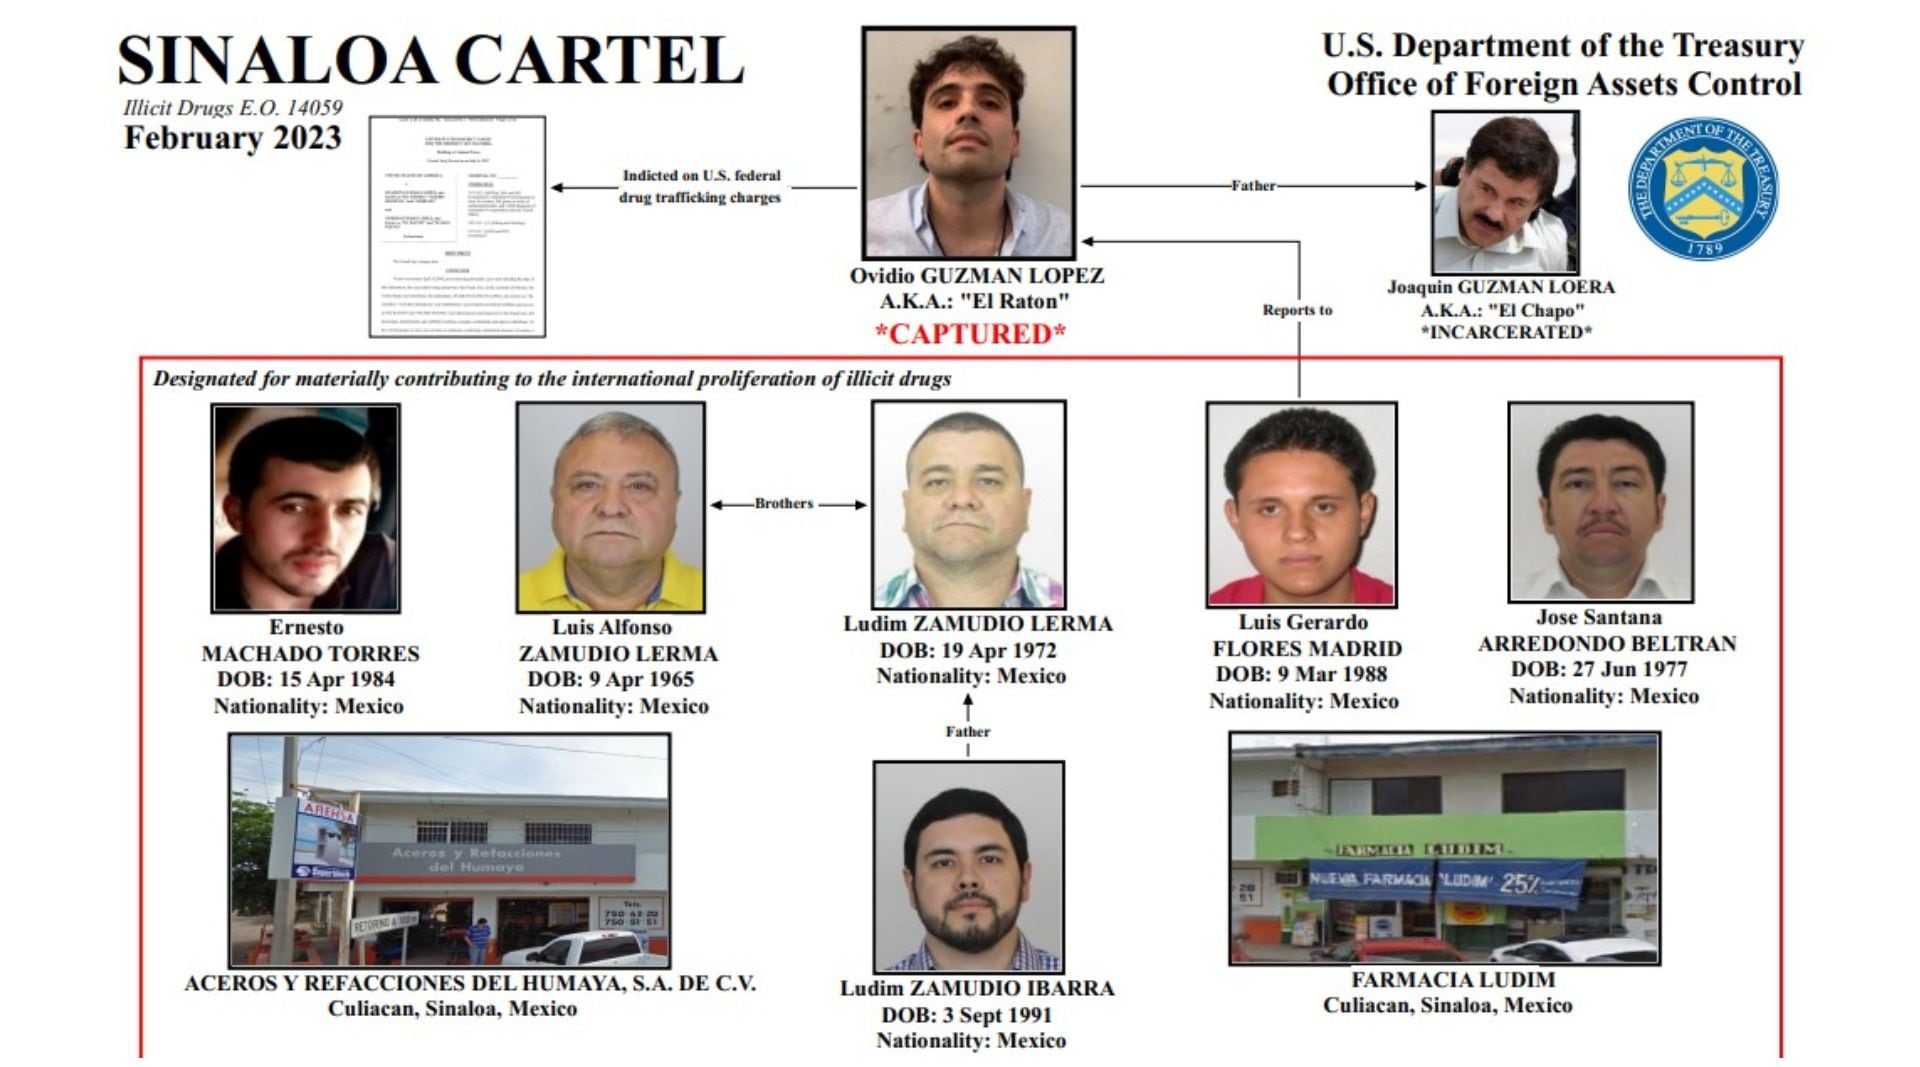 Los hermanos Zamudio Lerma, y el hijo de uno de ellos, serían los principales proveedores de los "súper laboratorios" del Cártel de Sinaloa. (Departamento del Tesoro de EEUU)